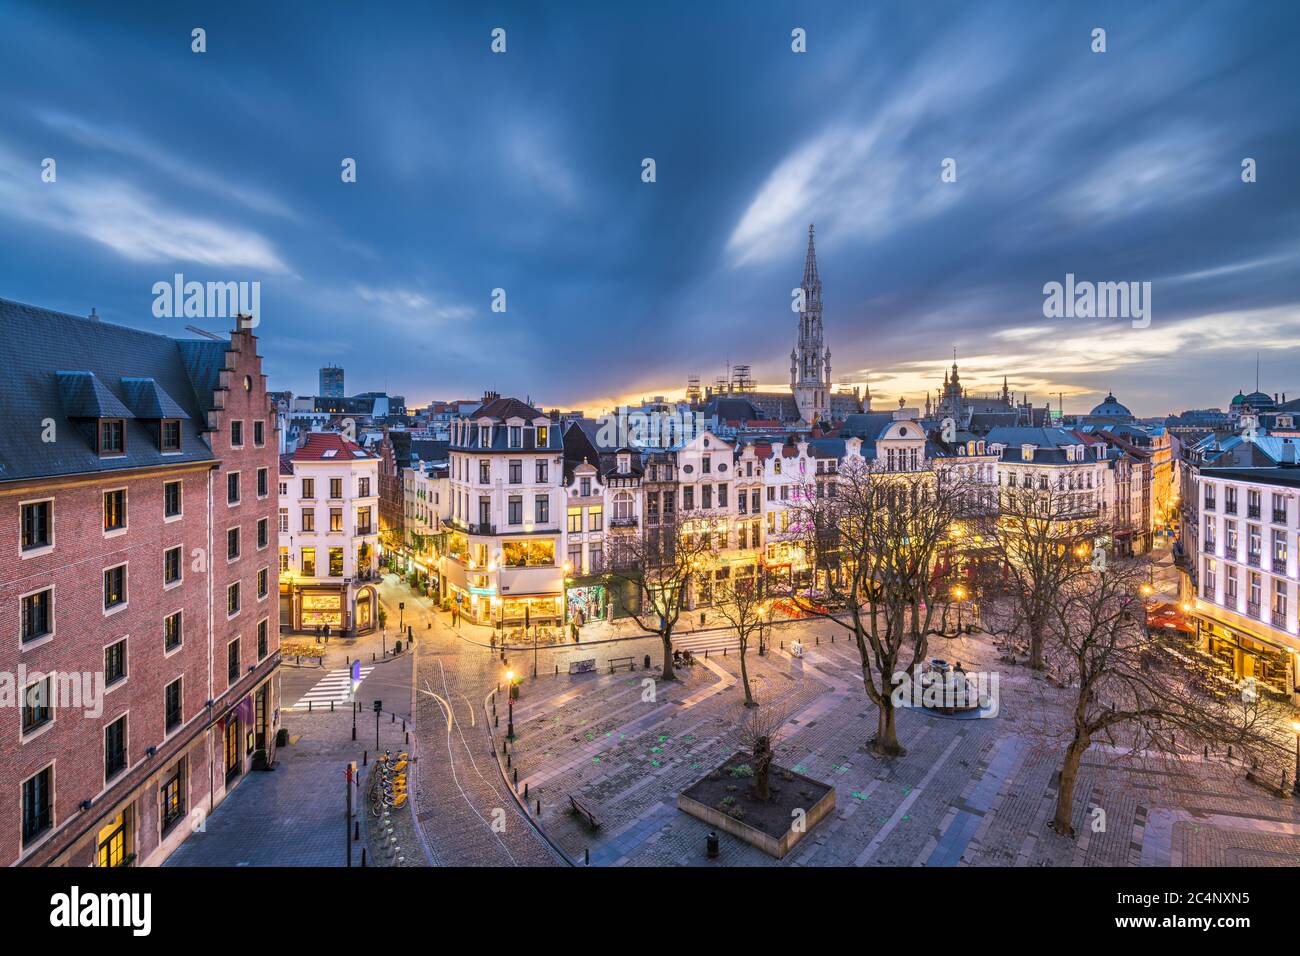 Bruxelles, Belgique plaza et horizon avec la tour de l'hôtel de ville au crépuscule. Banque D'Images